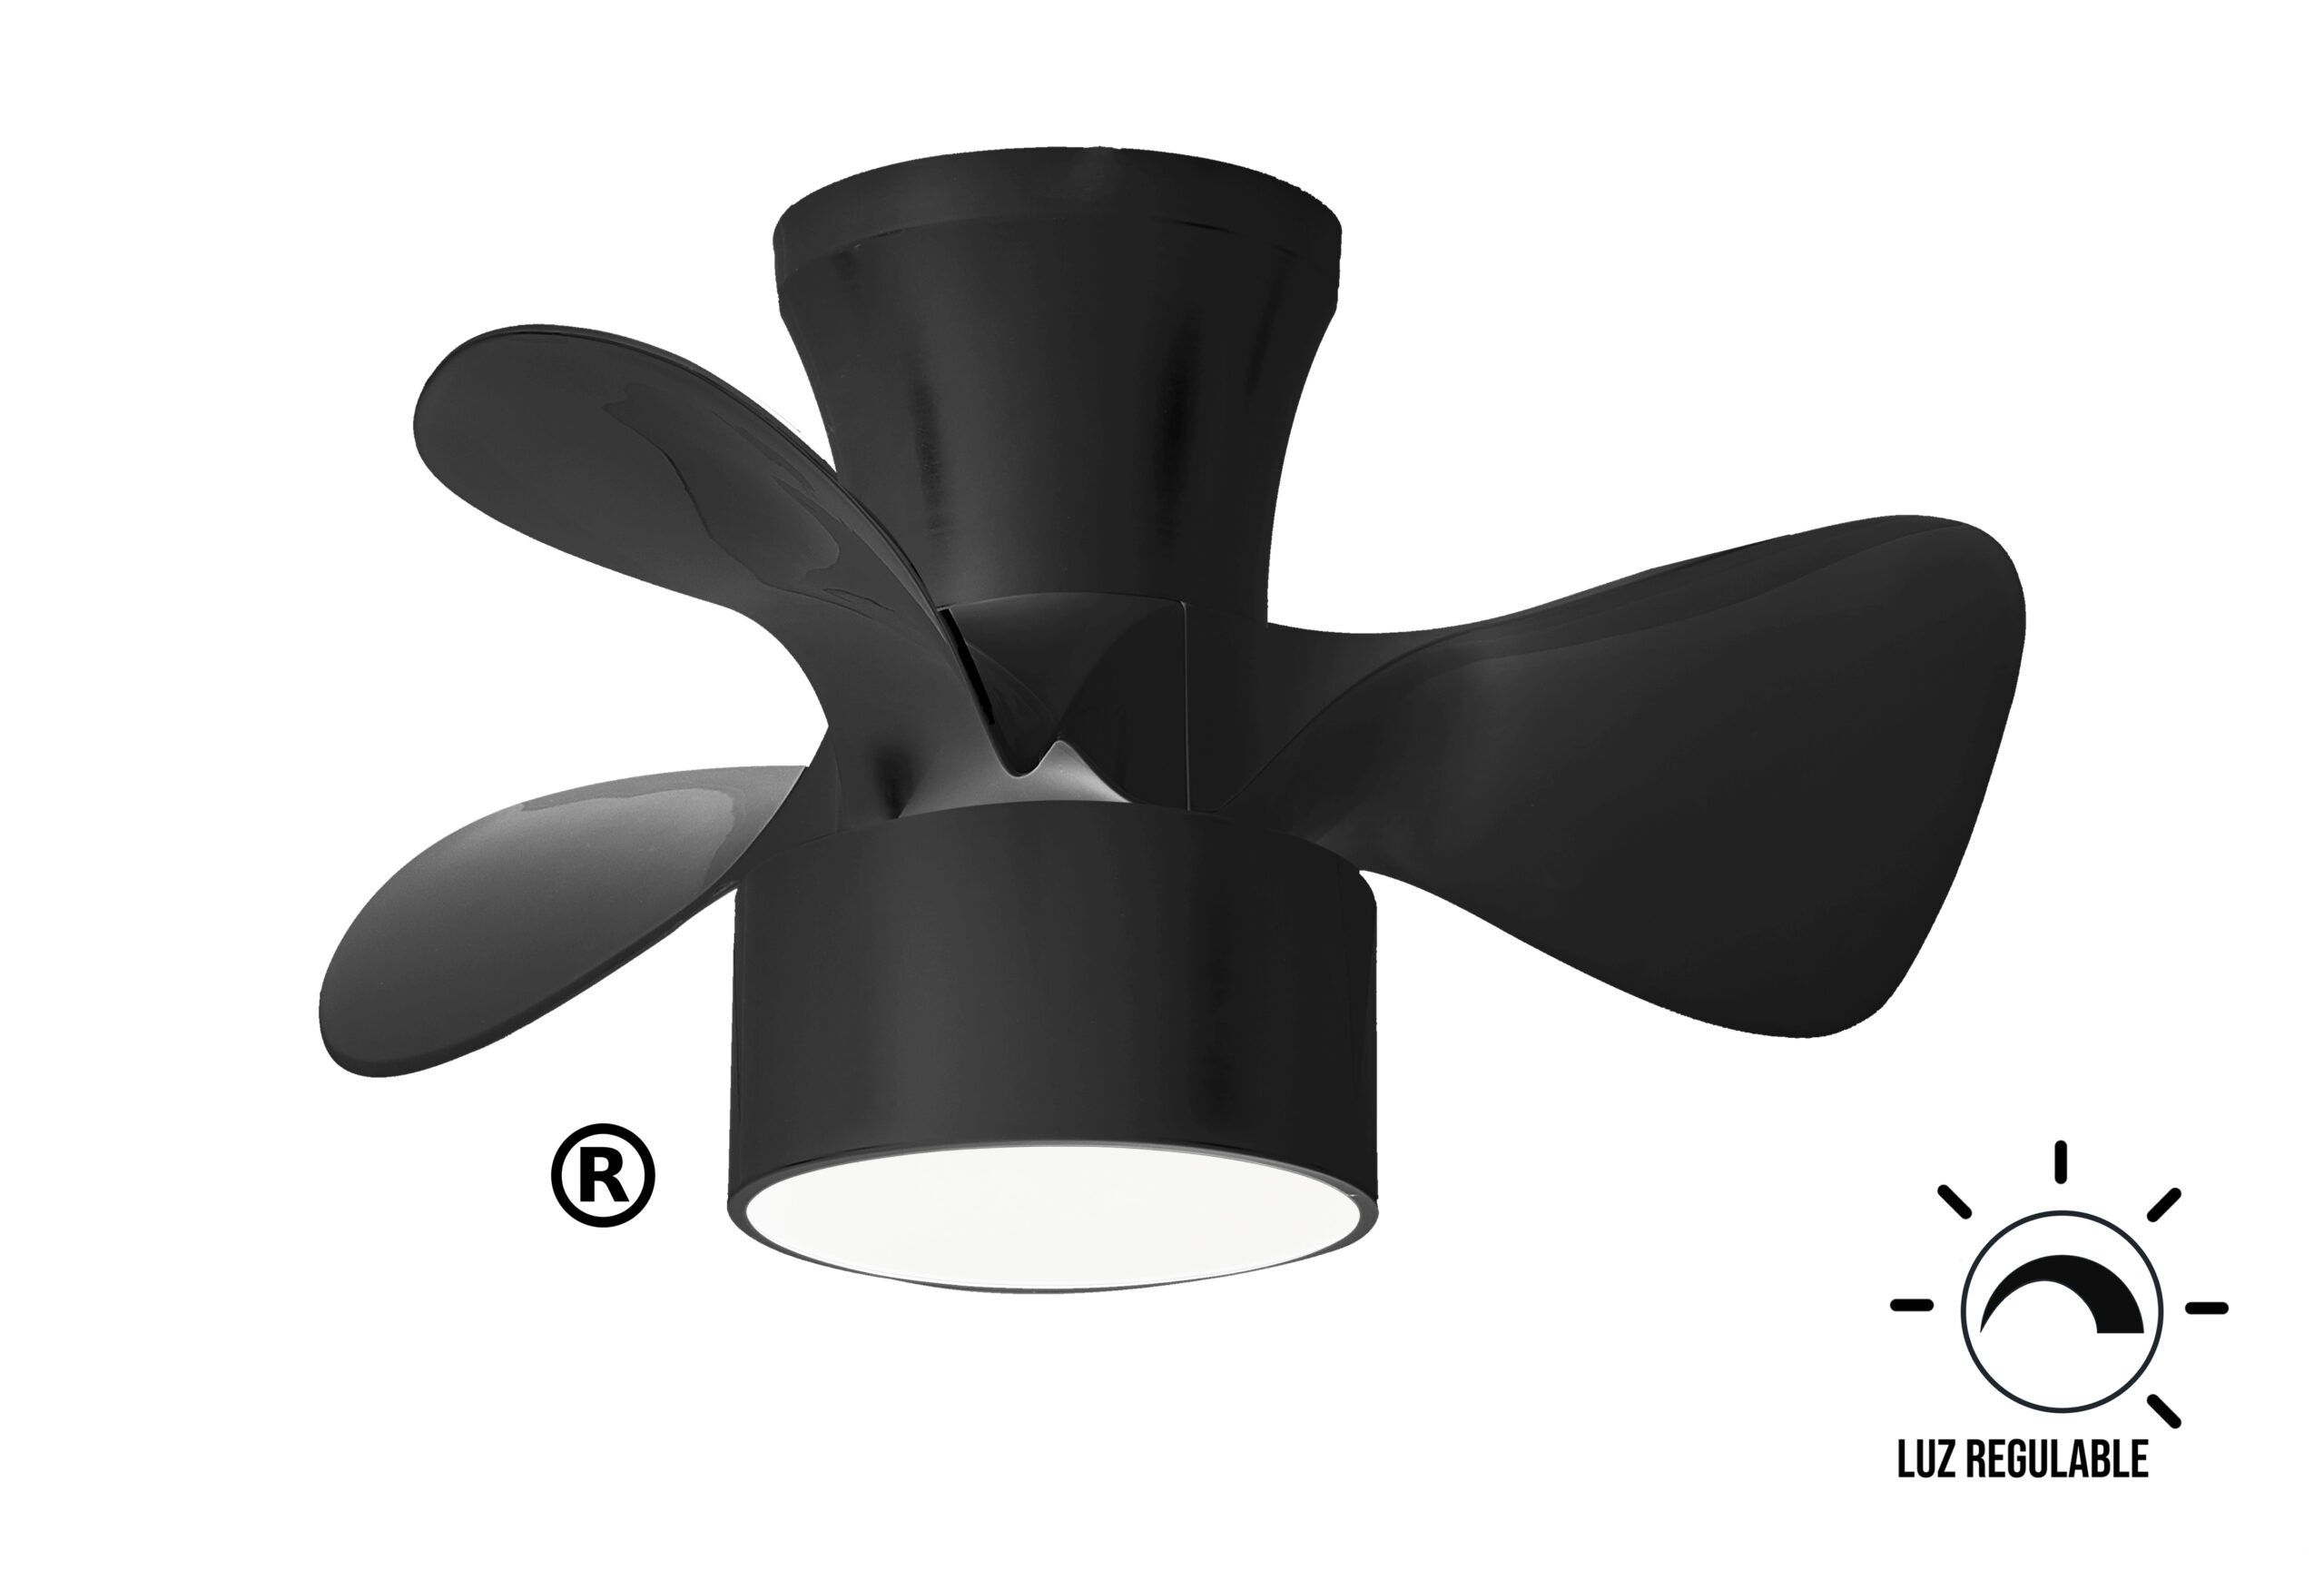 Lámpara Ventilador Techo FLY (10436-fan,10480-fan,104374-fan) > DID  Iluminación > Lámparas, plafones, apliques